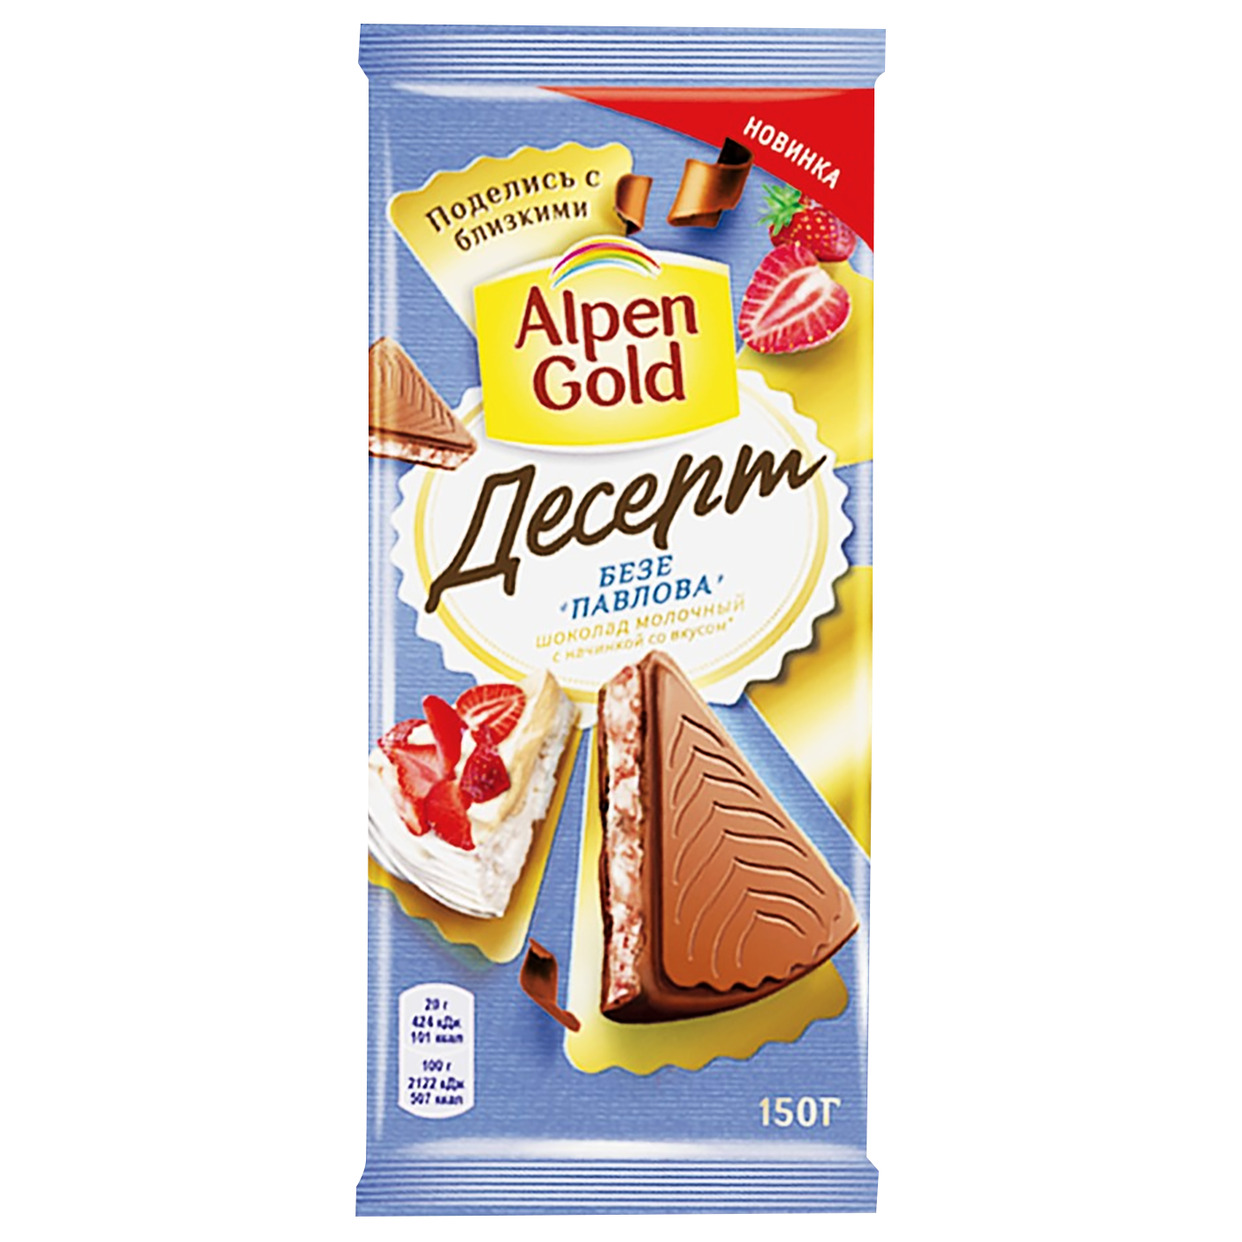 Шоколад молочный Alpen Gold Альпен Гольд Десерт Безе Павлова с клубничной начинкой с безе, 150г по акции в Пятерочке